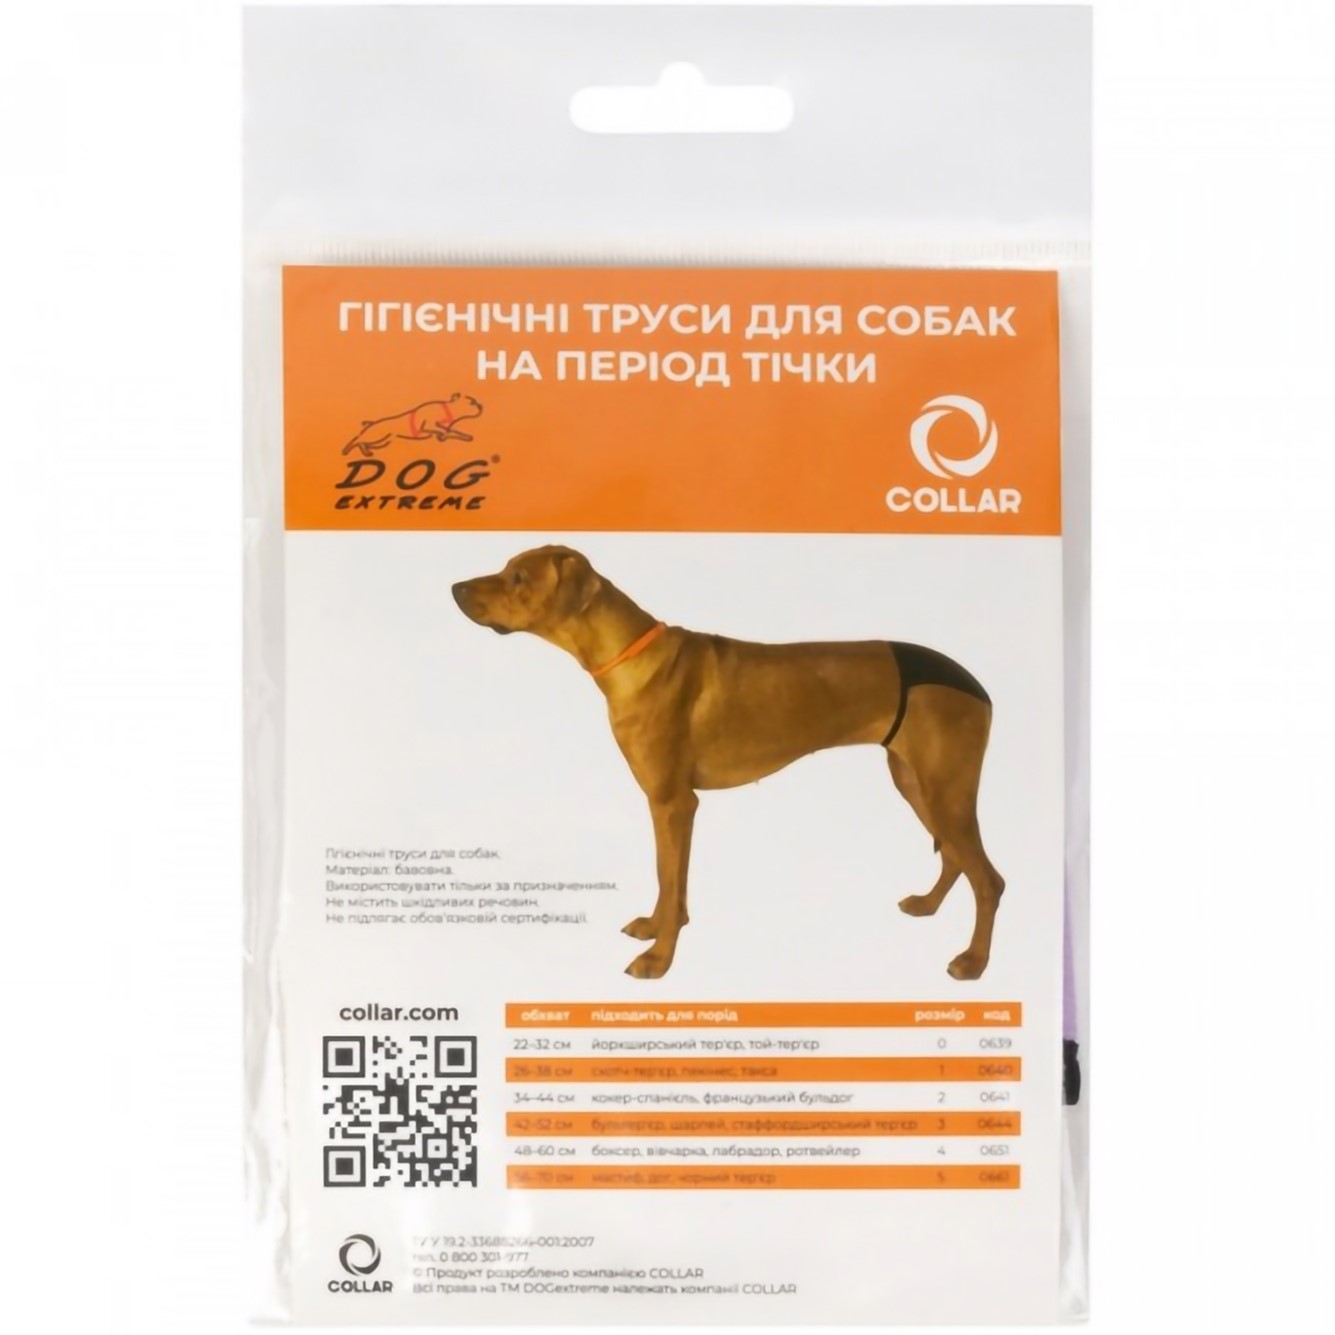 Гігієнічні труси для собак Collar Dog Extremе №1 (А:26-38 см) скотч-тер'єр, пекінес, сині (640) - фото 1